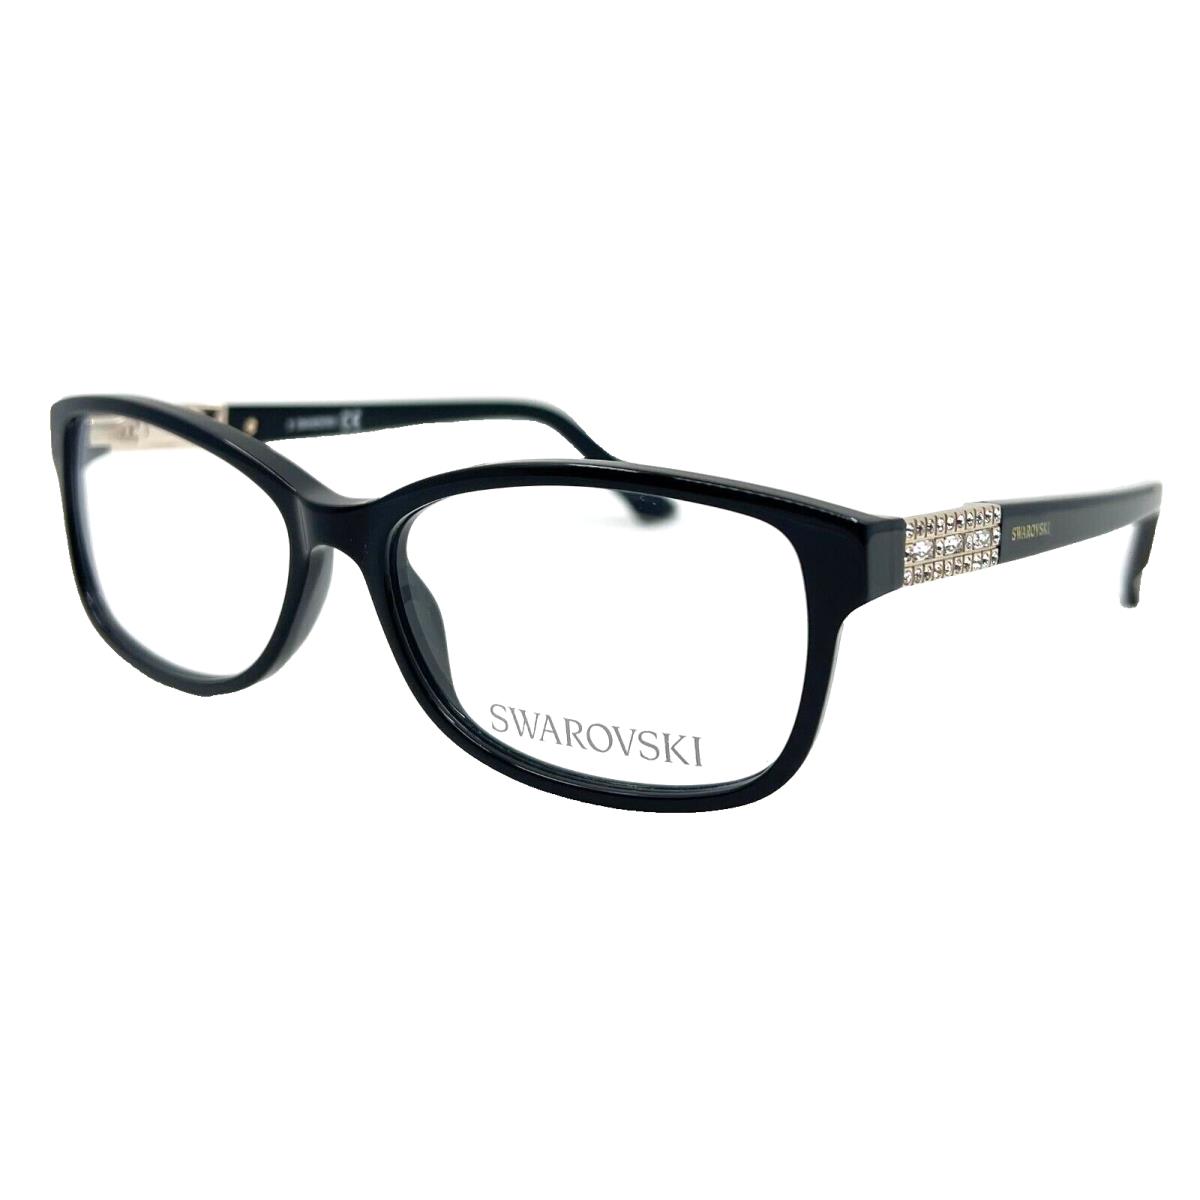 Swarovski - SK5155 001 53/14/140 - Black - Eyeglasses Case